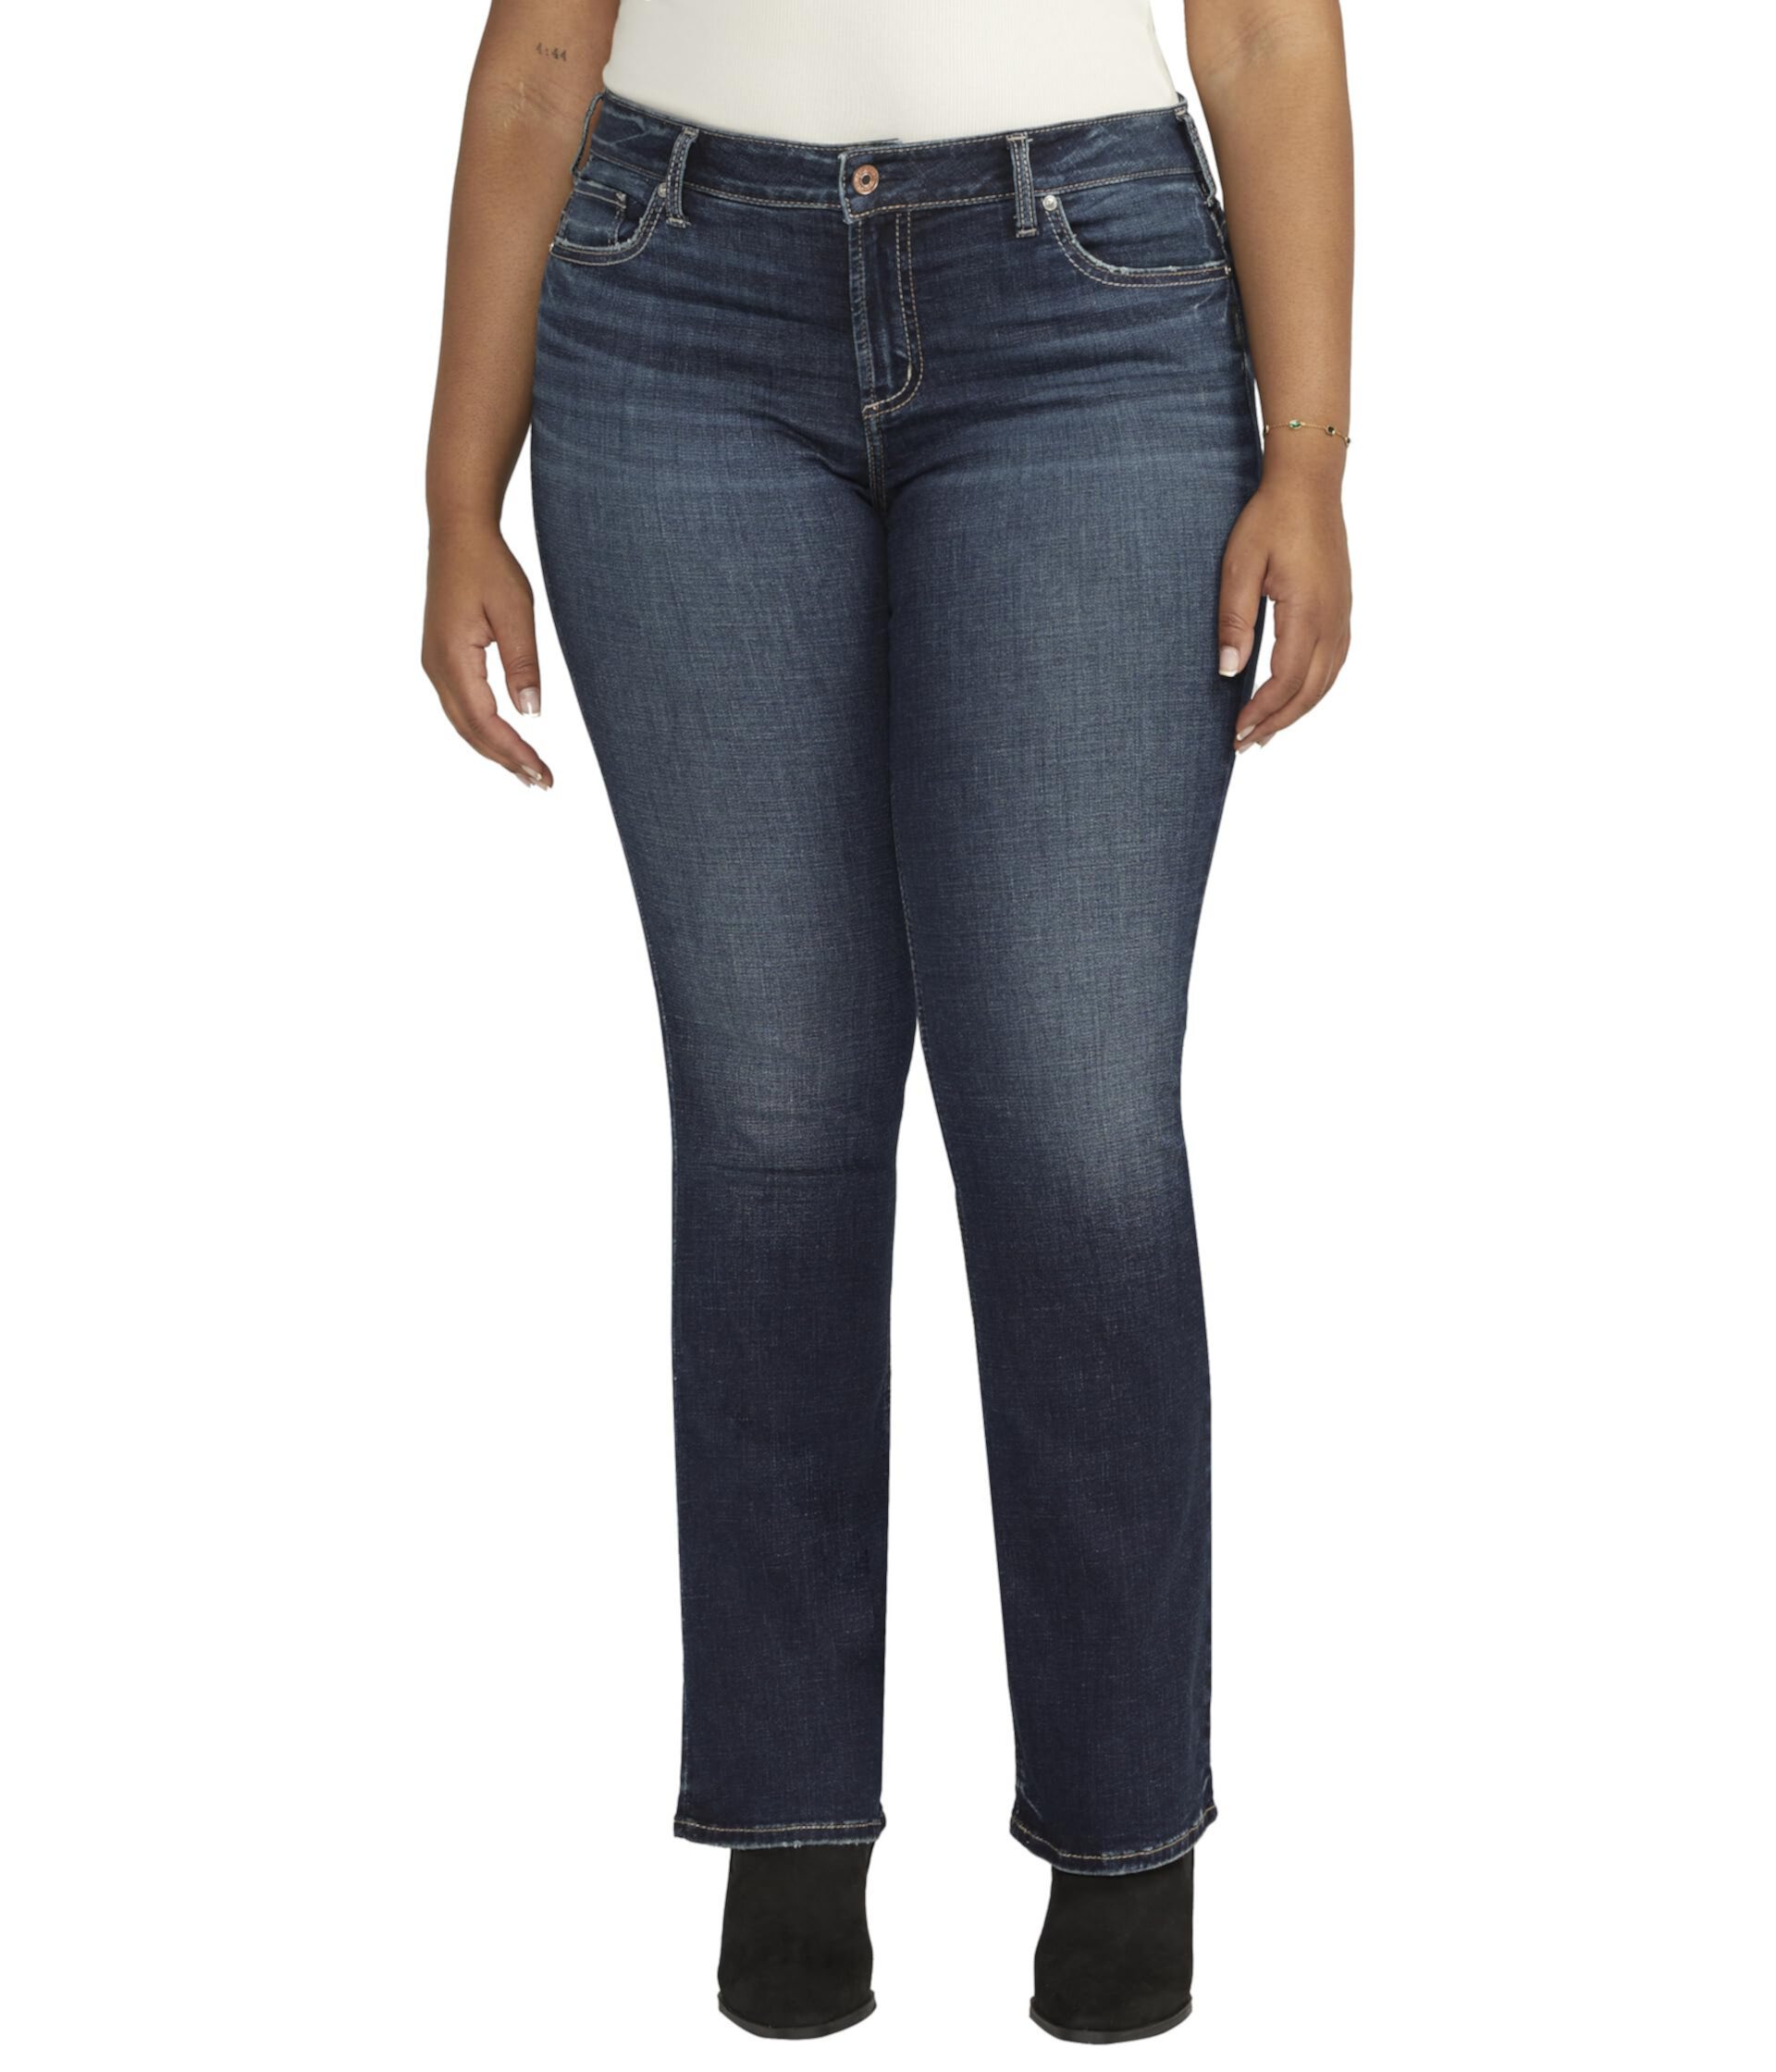 Узкие джинсы Elyse со средней посадкой больших размеров W03601ECF486 Silver Jeans Co.